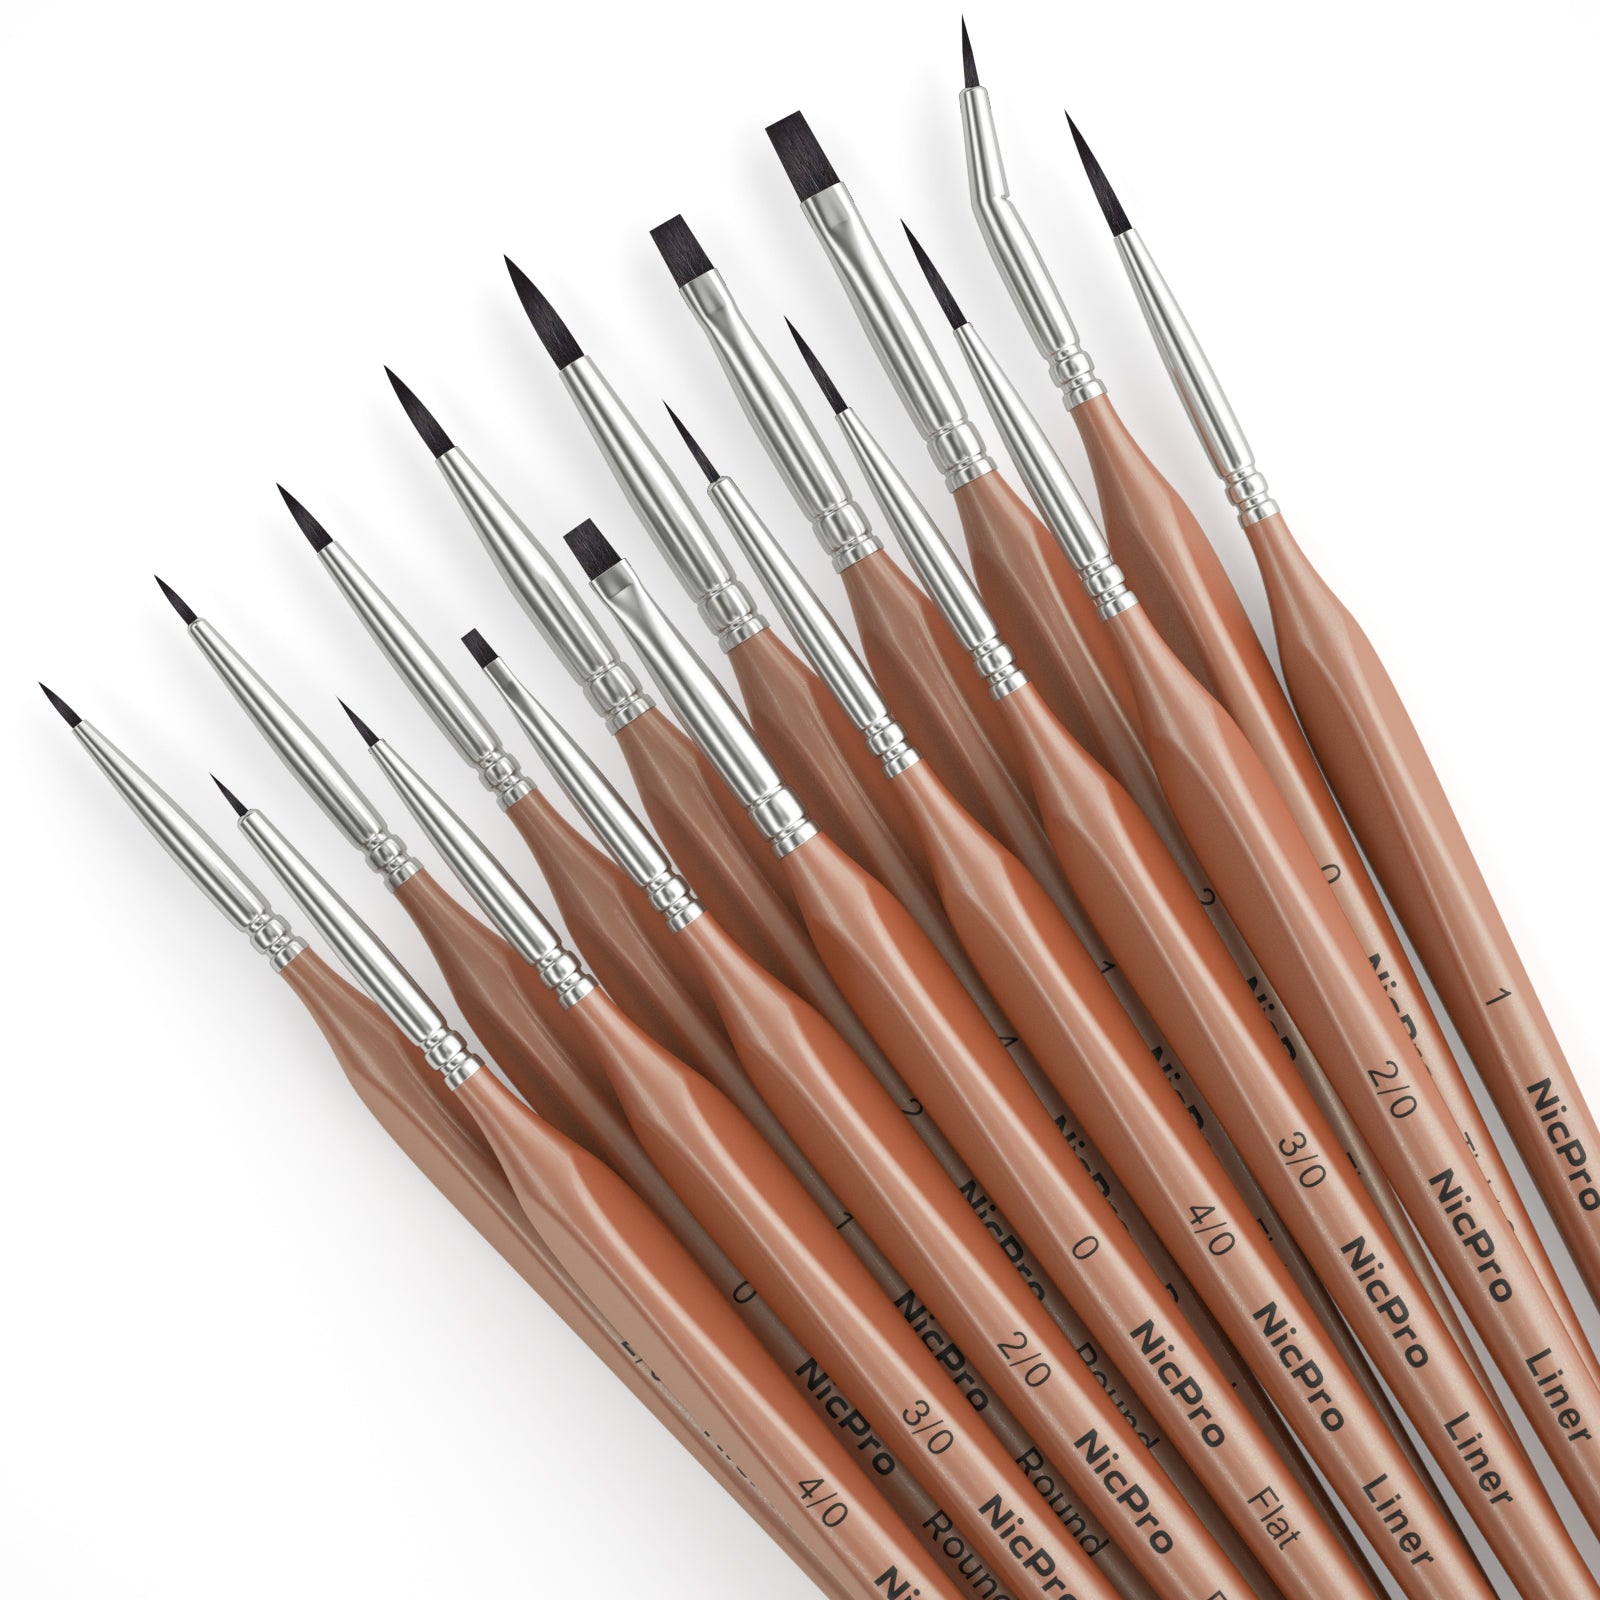 Nicpro 24 PCS Paint Brushes Set, Acrylic Paint Brush, Enhanced Synthet